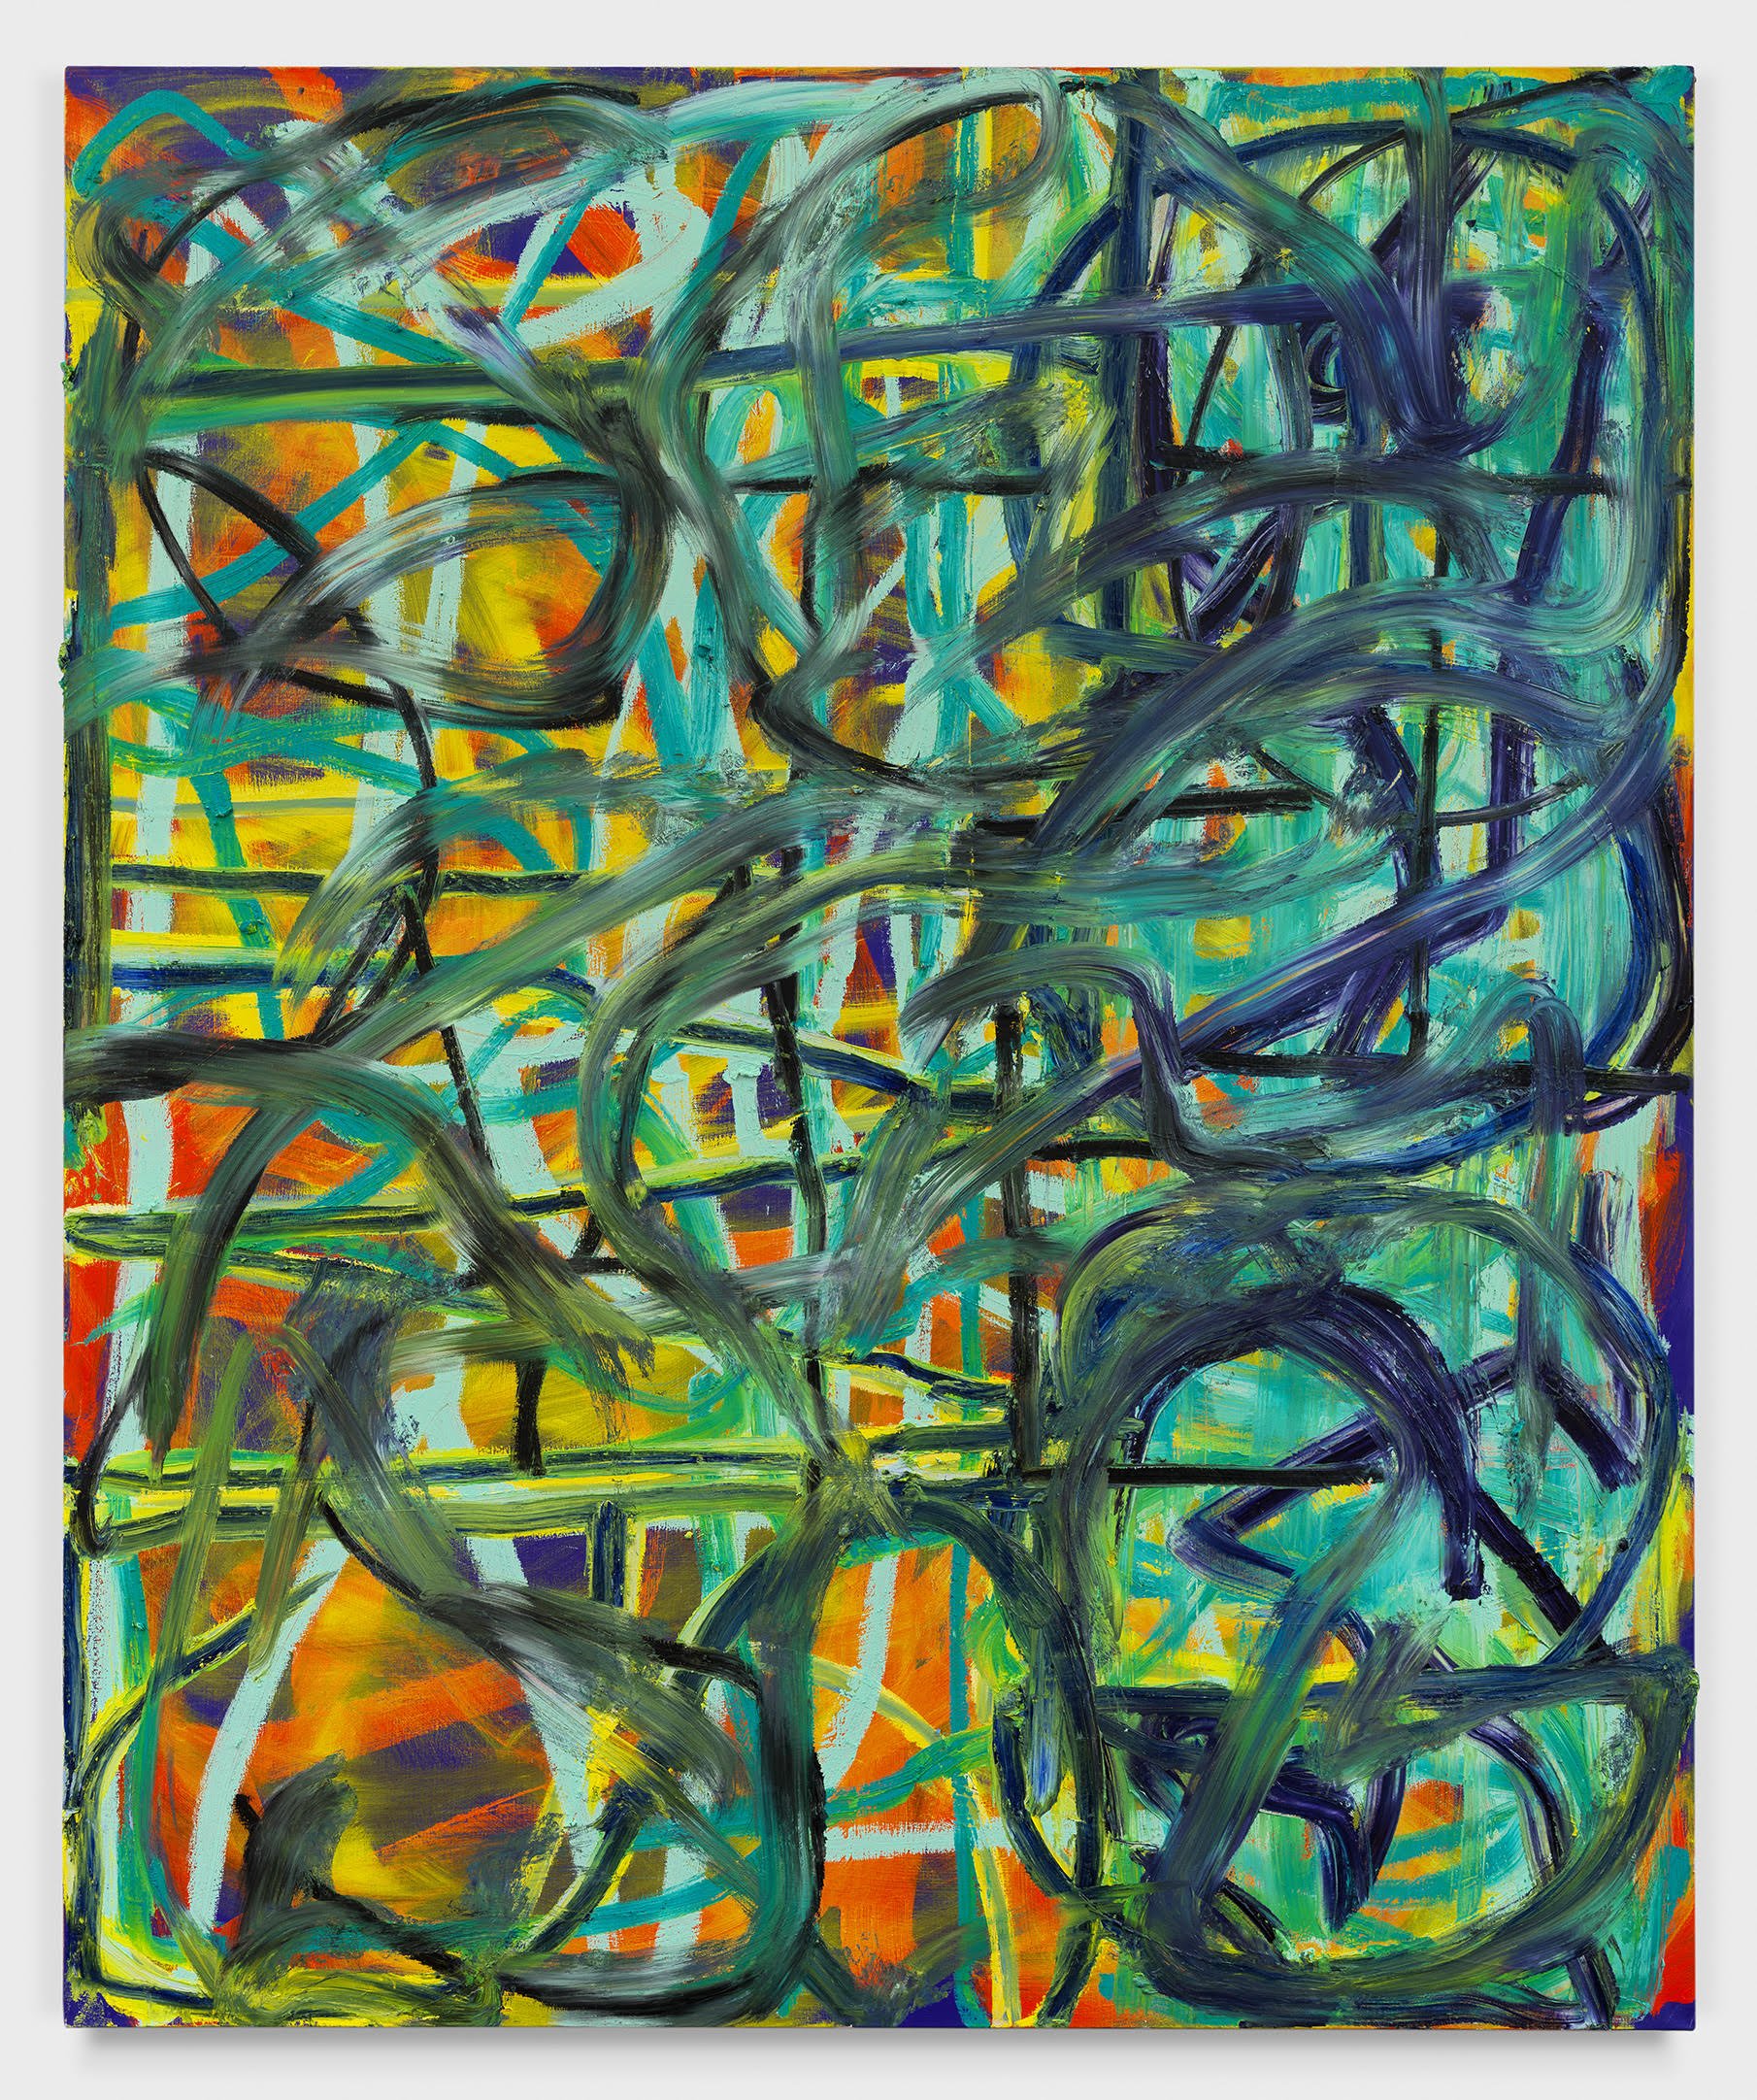  Sam Jablon  Erased, 2023  Oil on linen  60 x 50 in.  152.4 x 127 cm 